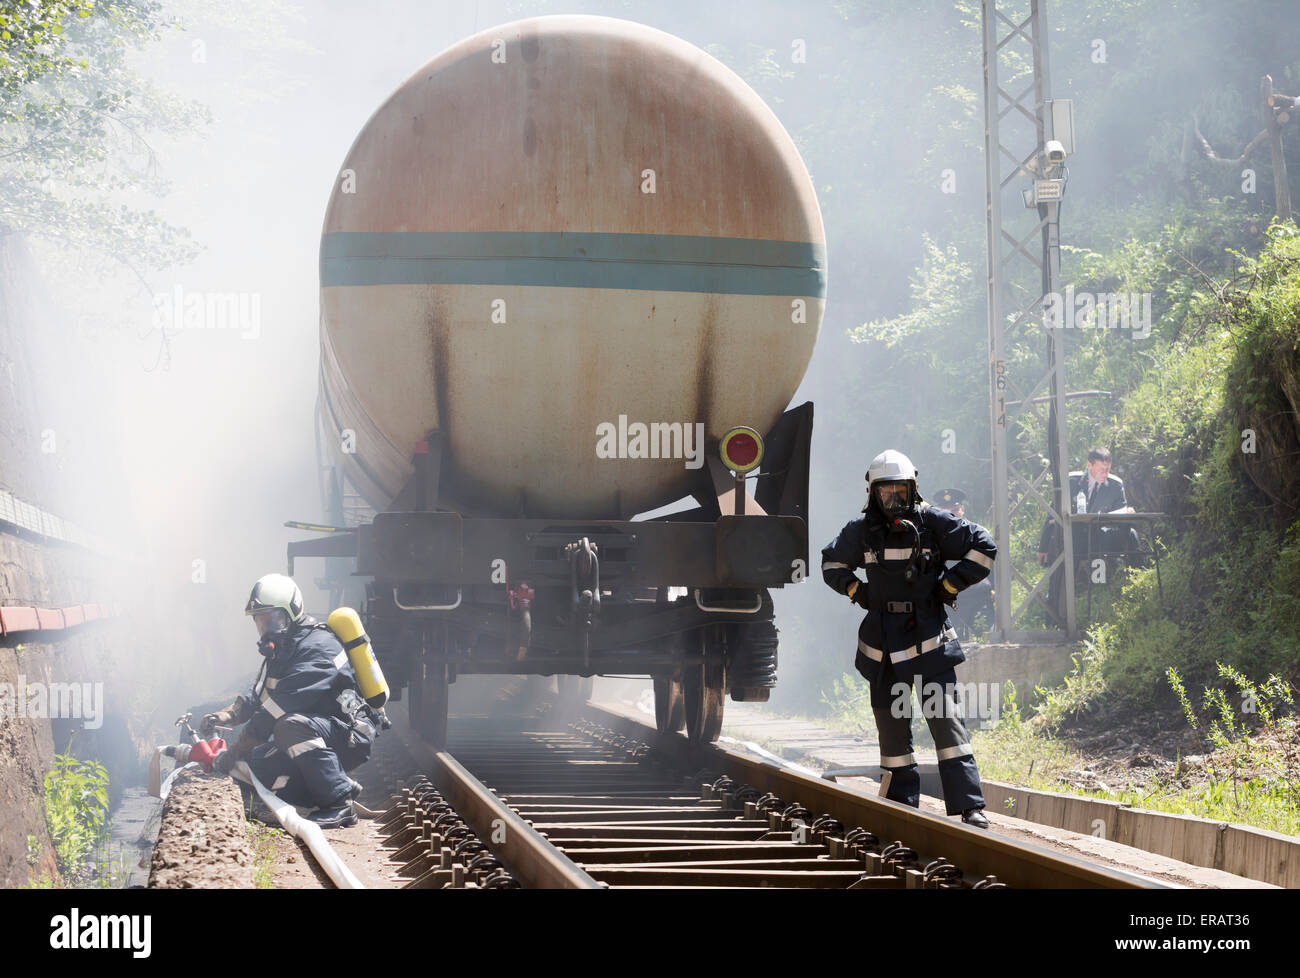 Sofia, Bulgarie - le 19 mai 2015 : Les pompiers sont des réservoirs de produits chimiques d'extinction train fret près de Sofia. Des équipes de pompiers Banque D'Images